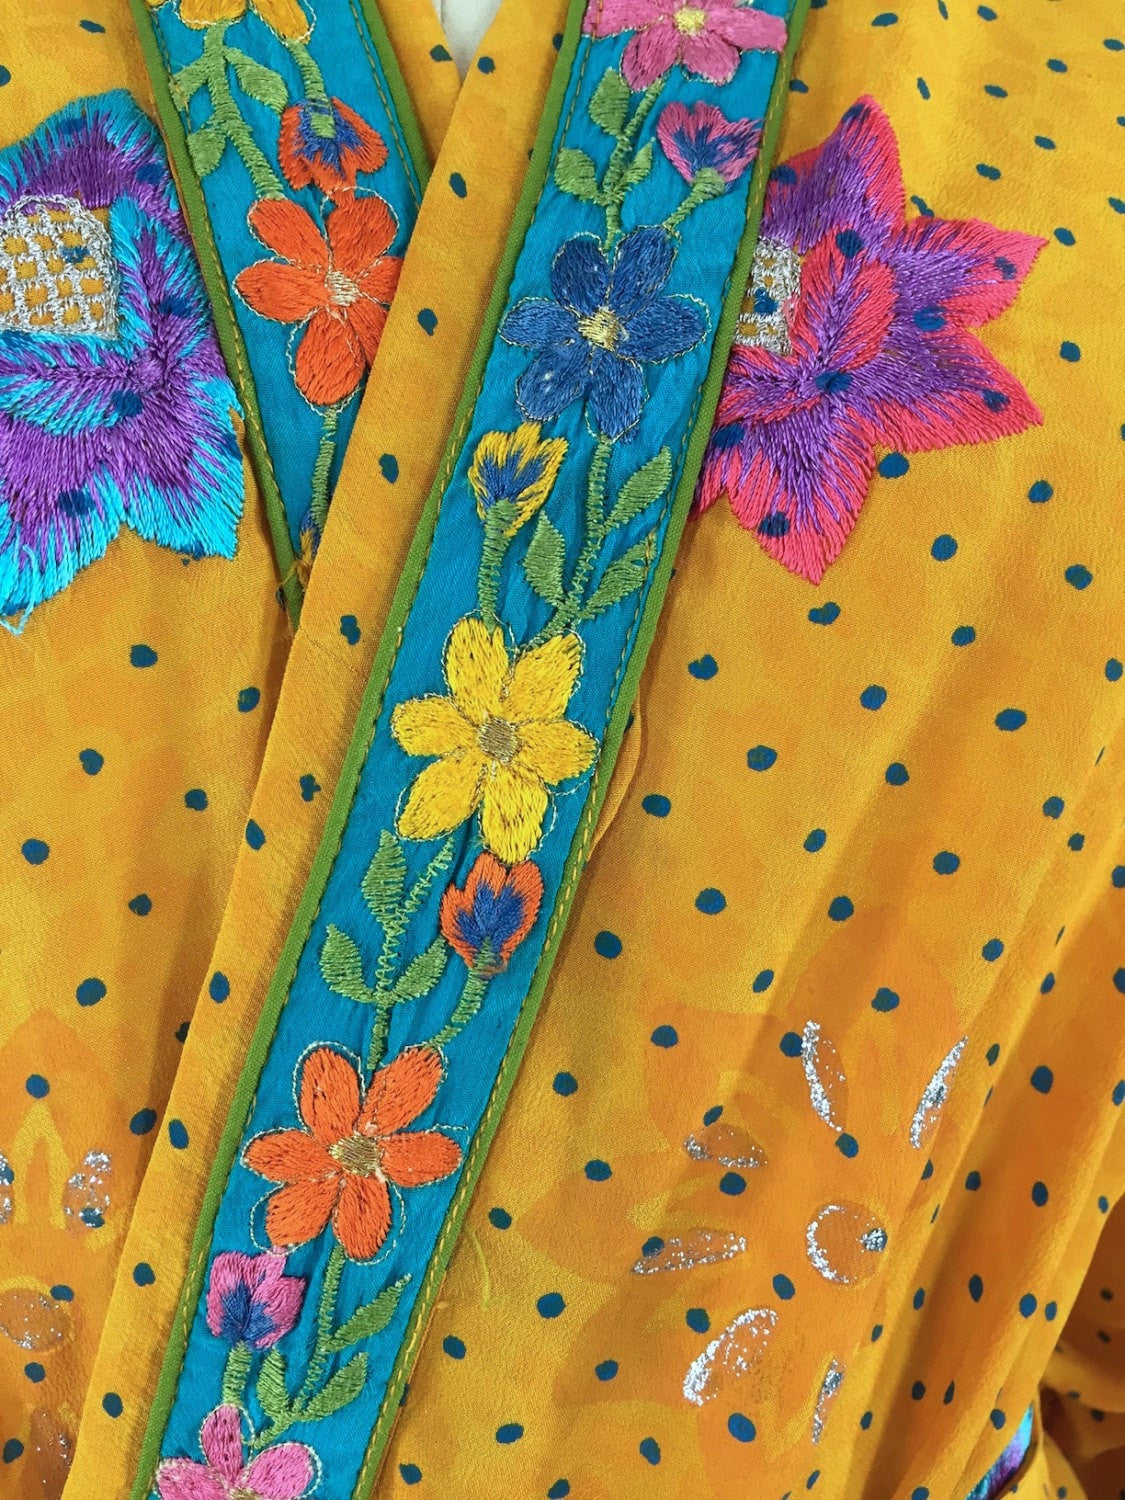 Silk Kimono Cardigan / Vintage Indian Sari / Yellow Floral Embroidery - ThisBlueBird